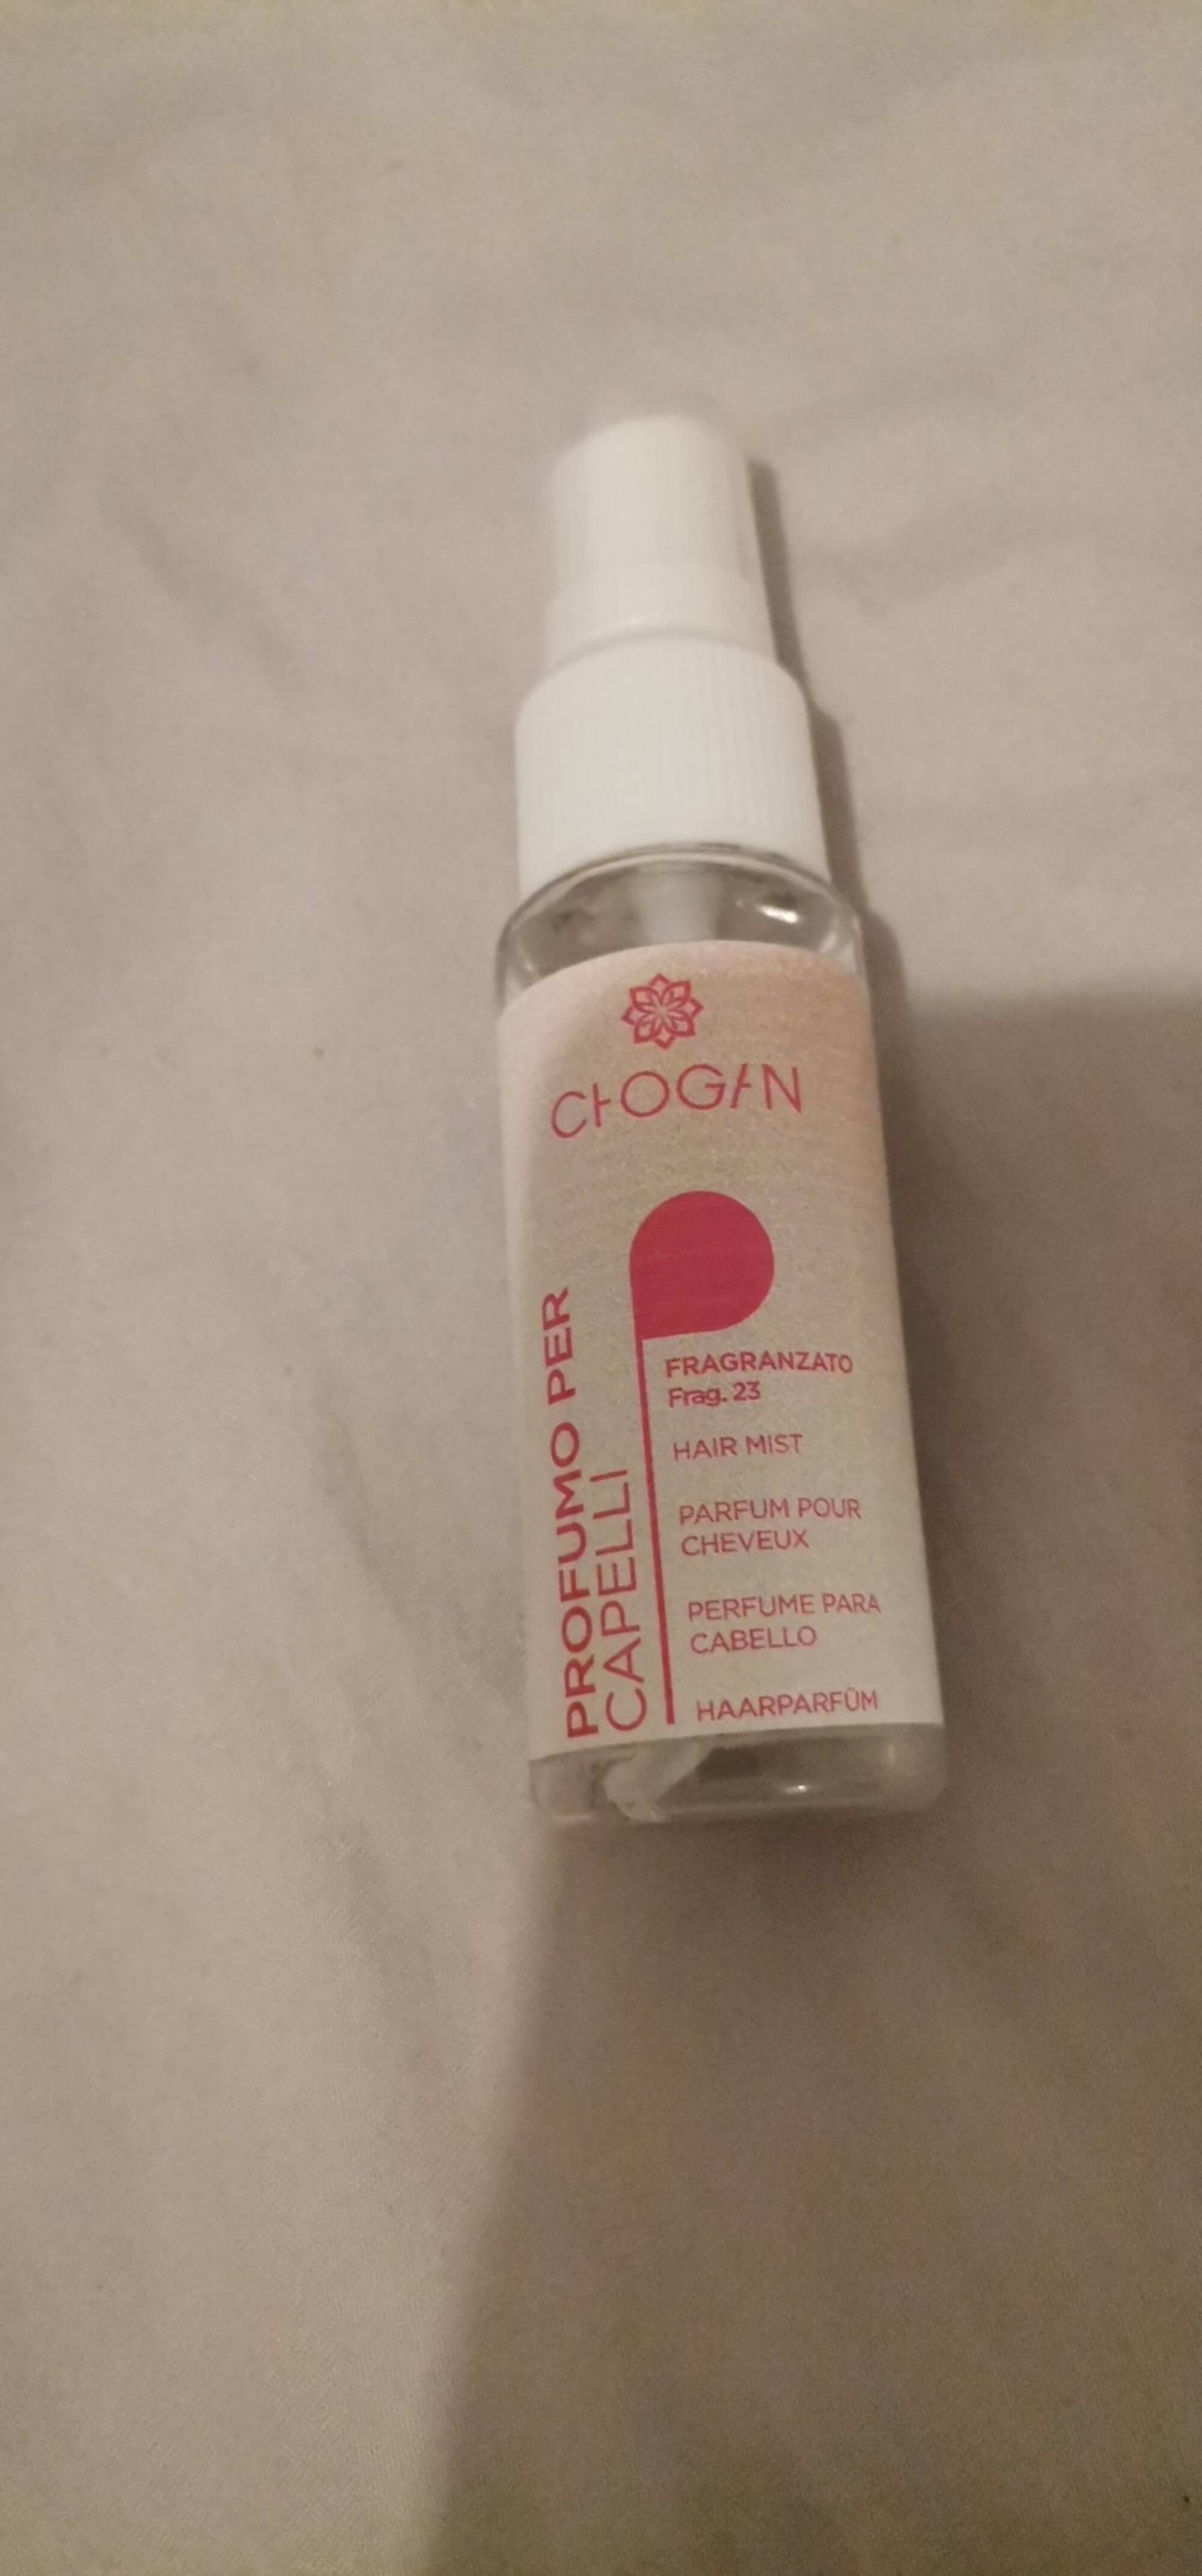 CHOGAN - Parfum pour cheveux